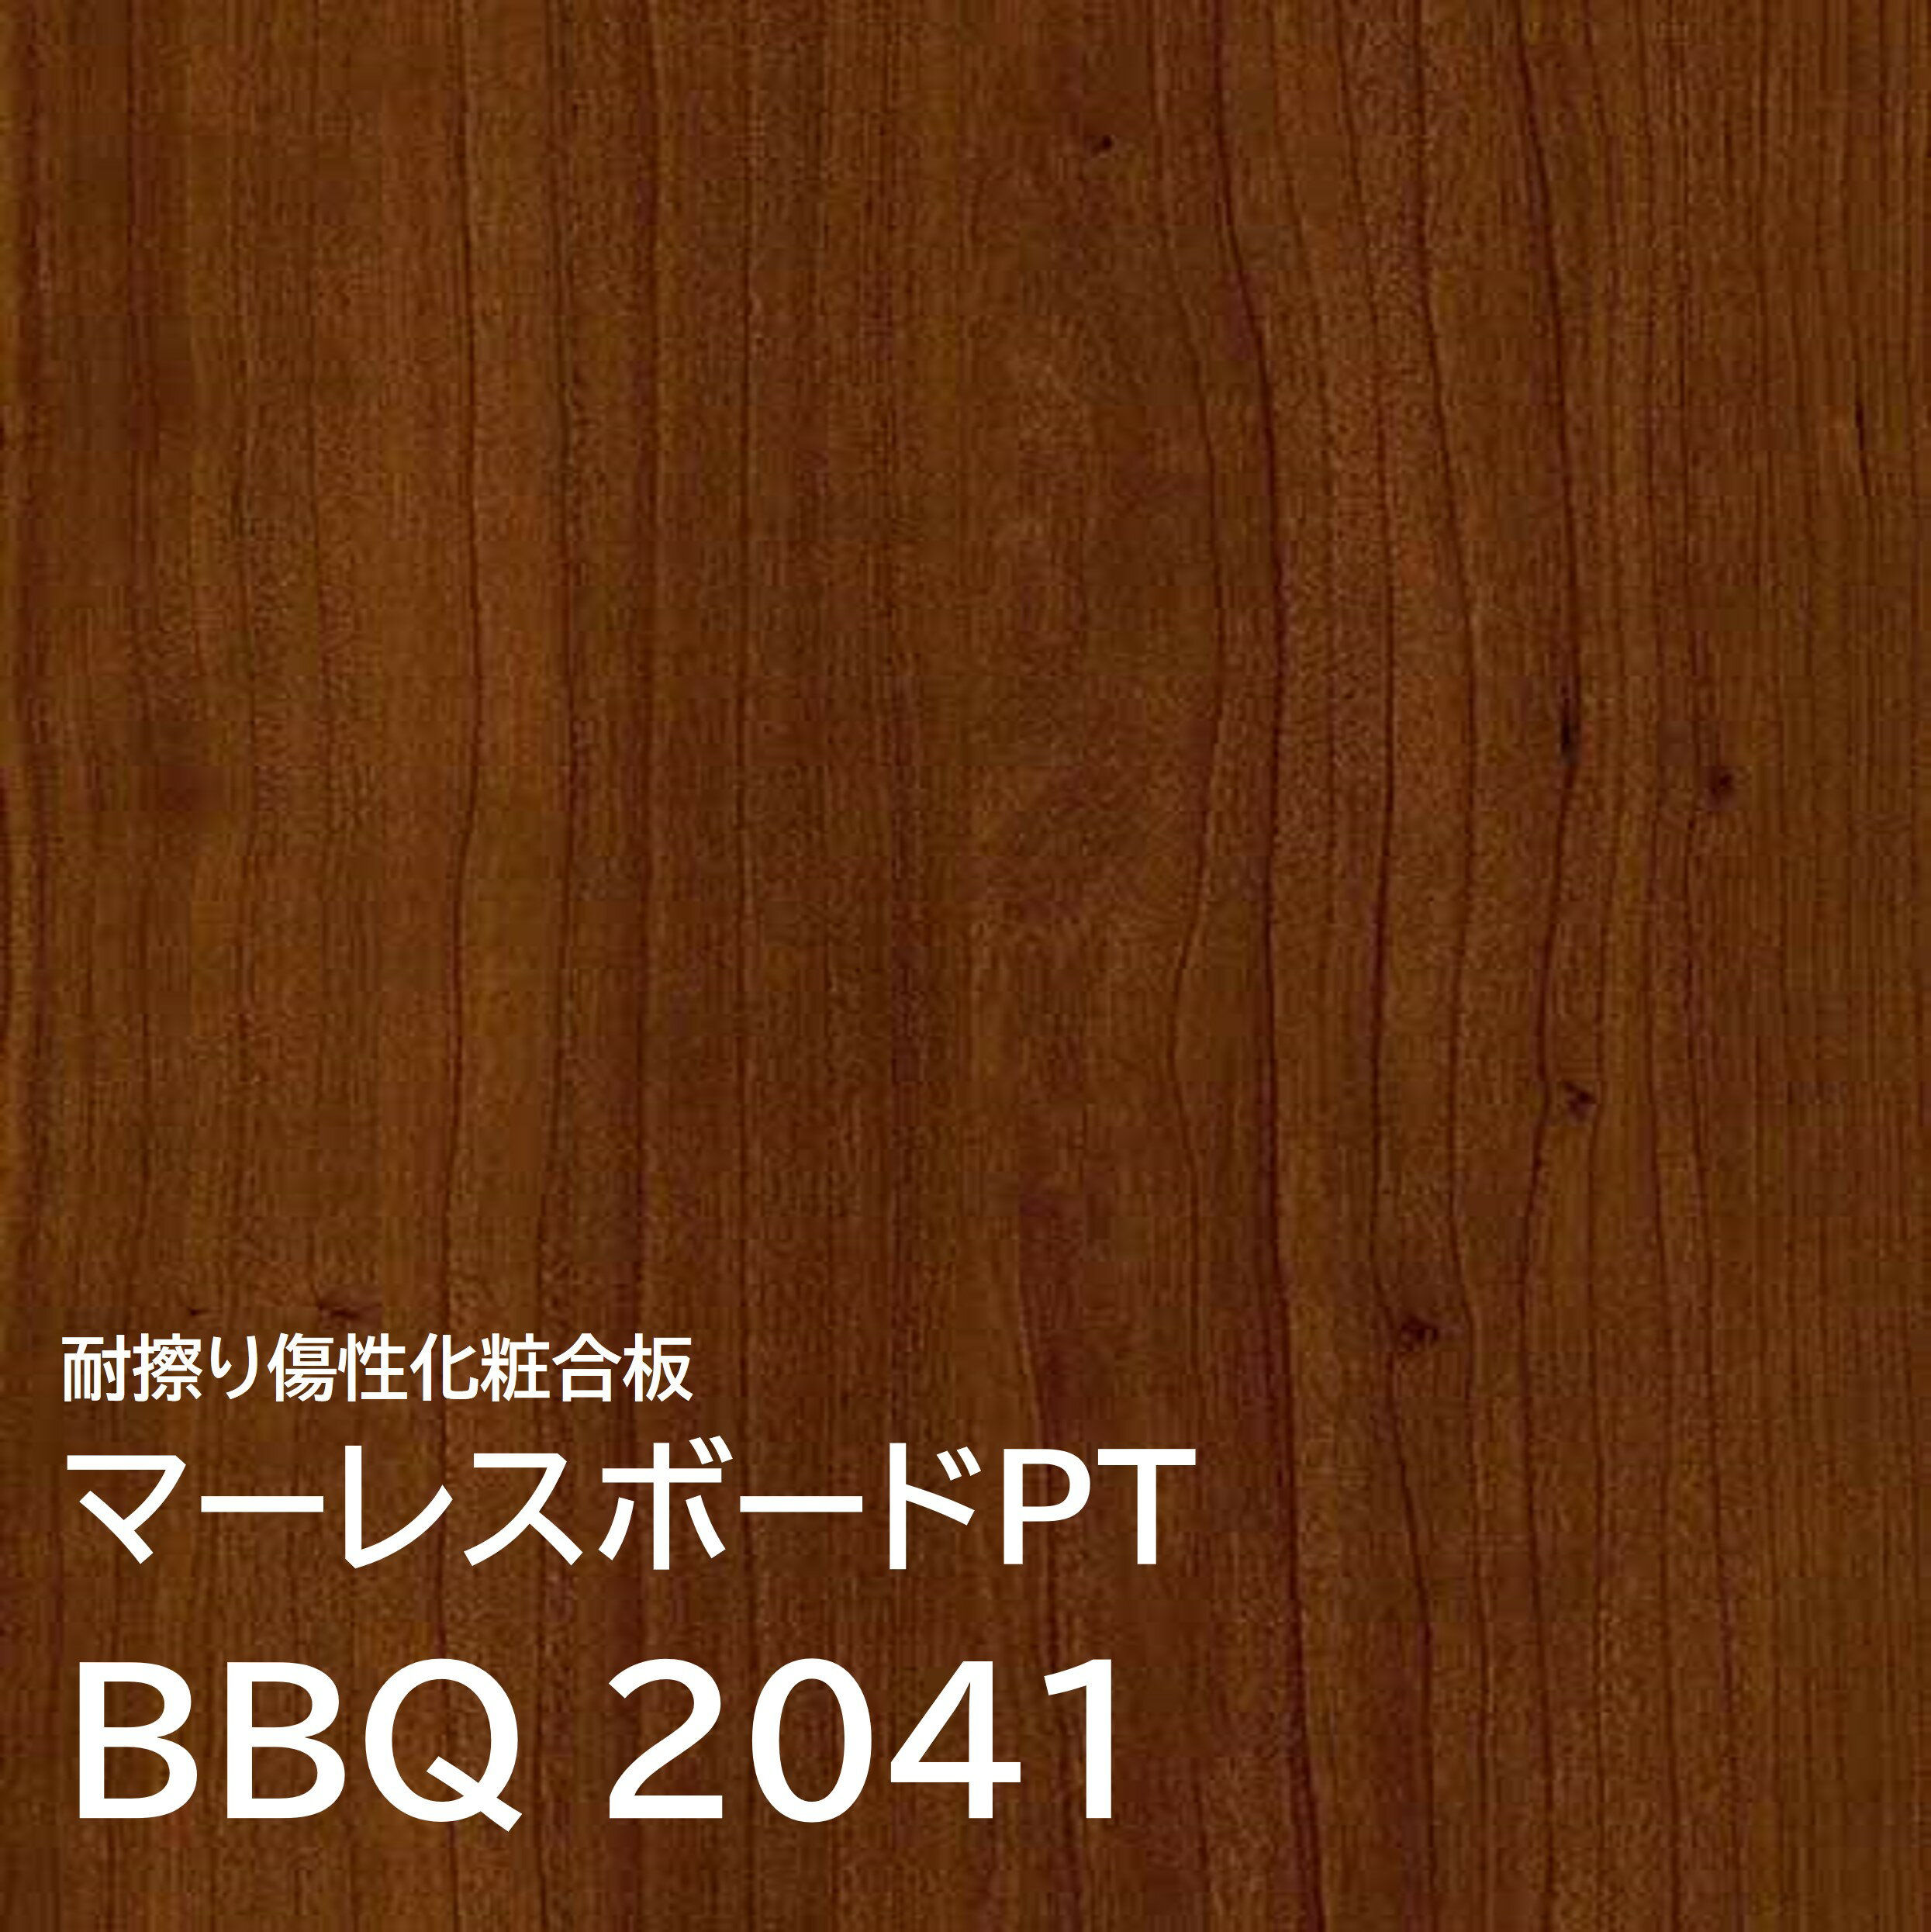 マーレスボードPT プレミアムテクスチャー BBQ2041 3×7 2.5mm 910×2125mm 木目 チェリー 柾目 ポリ合板 化粧合板